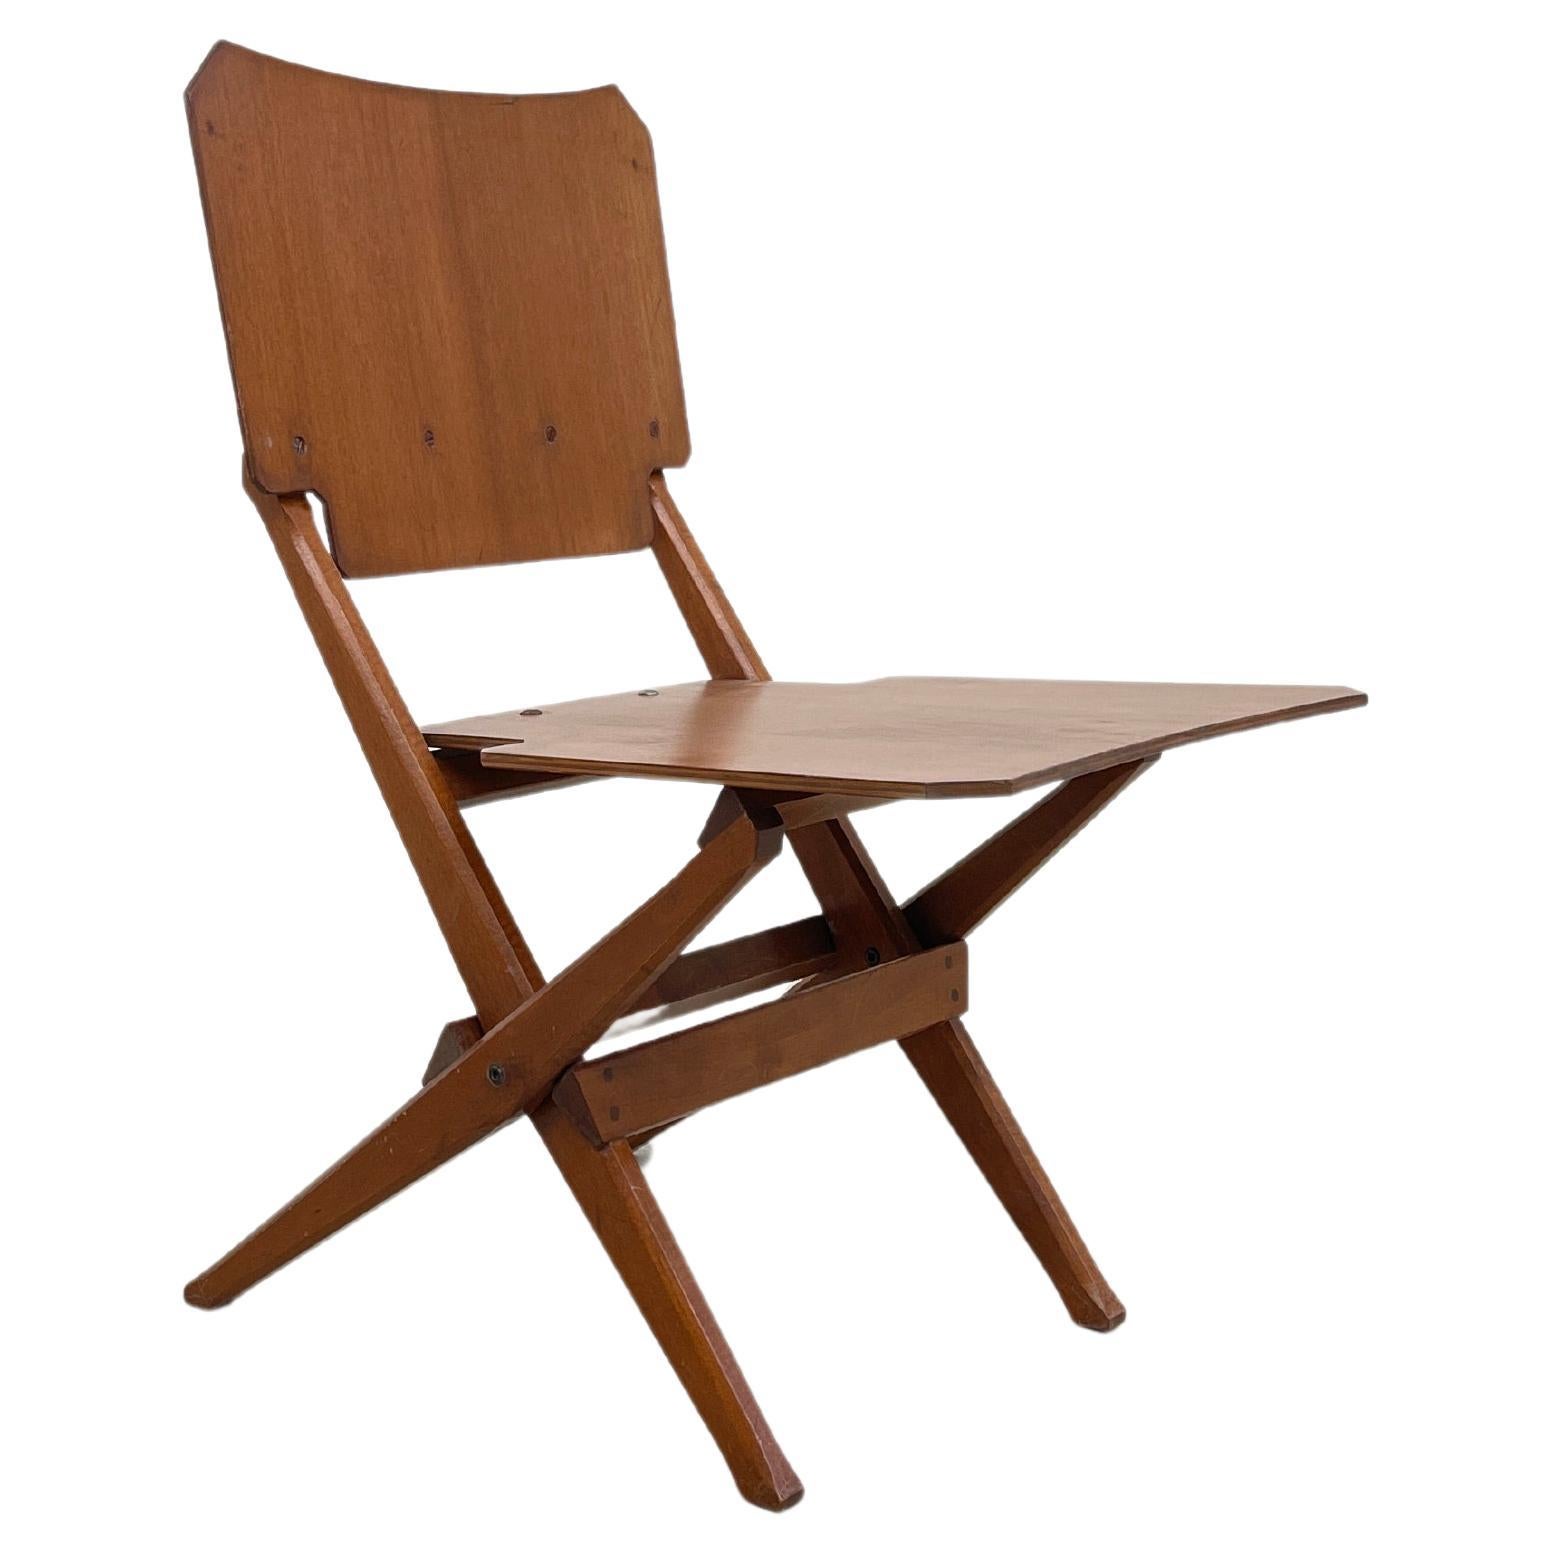 FRANCO ALBINI for POGGI Folding chair